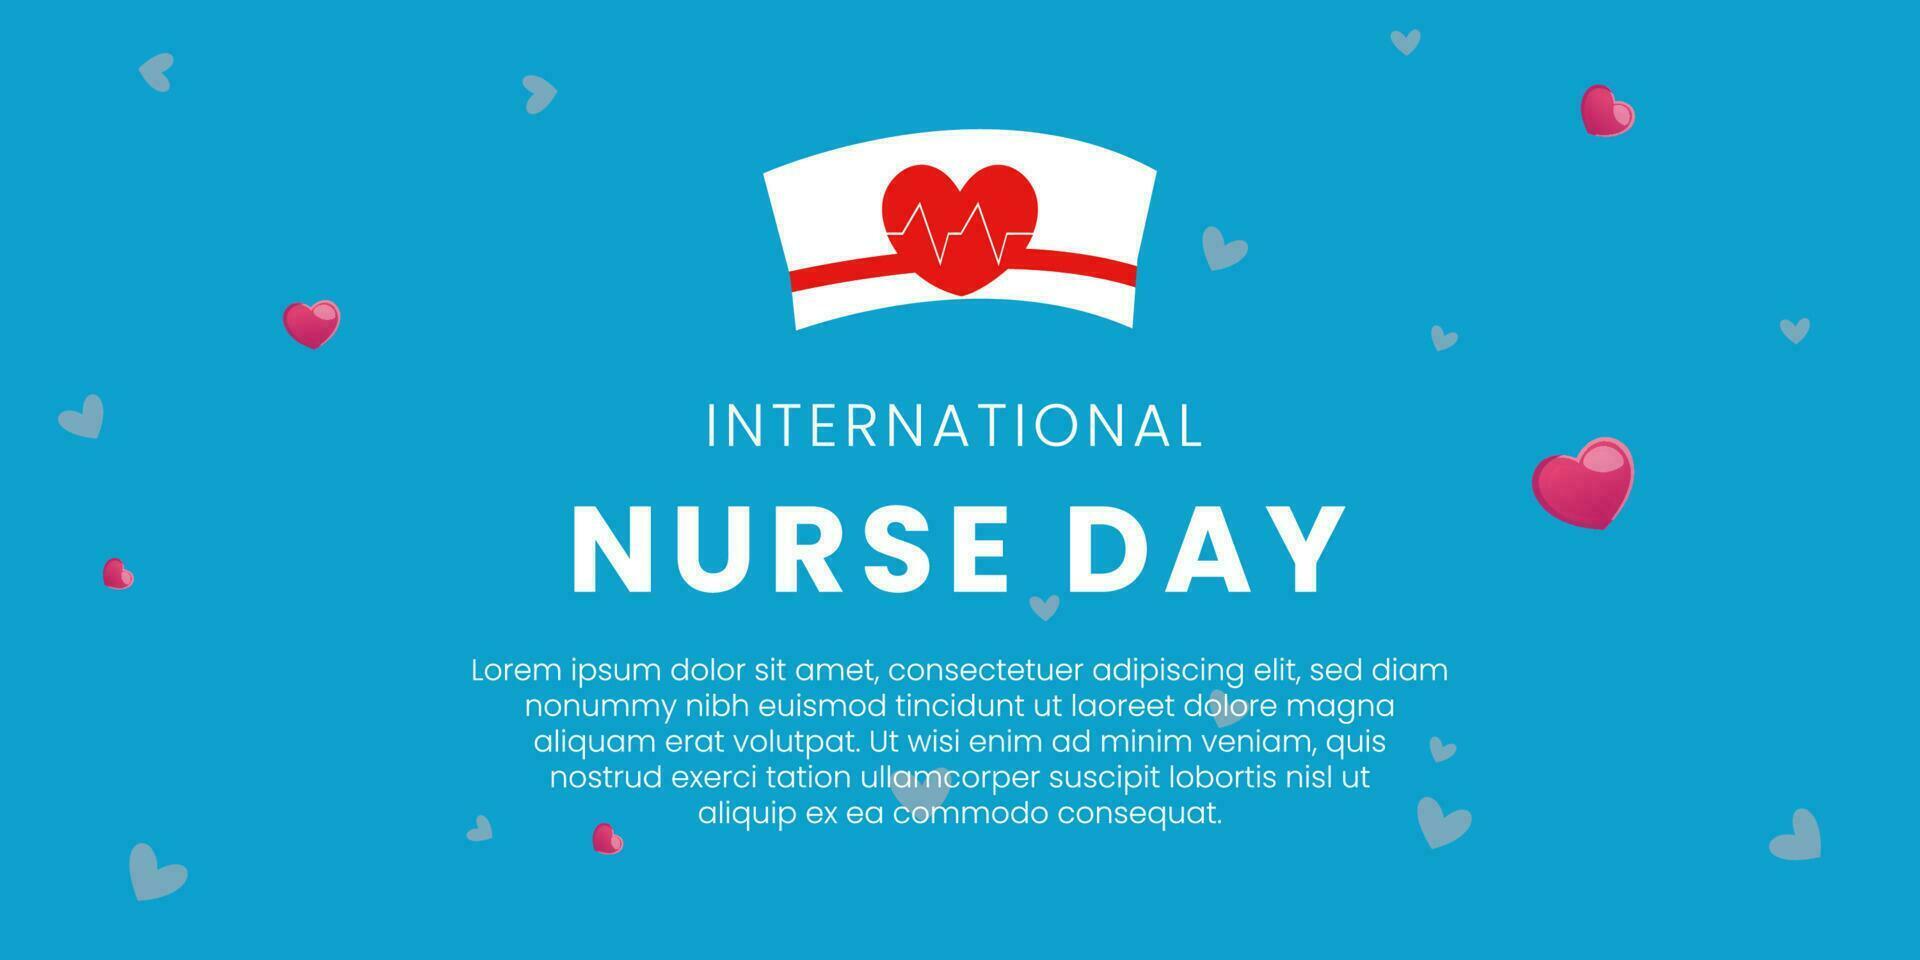 internationell sjuksköterskor dag observerats runt om de värld på 12 Maj av varje år, till mark de bidrag den där sjuksköterskor göra till samhälle. vektor illustration.